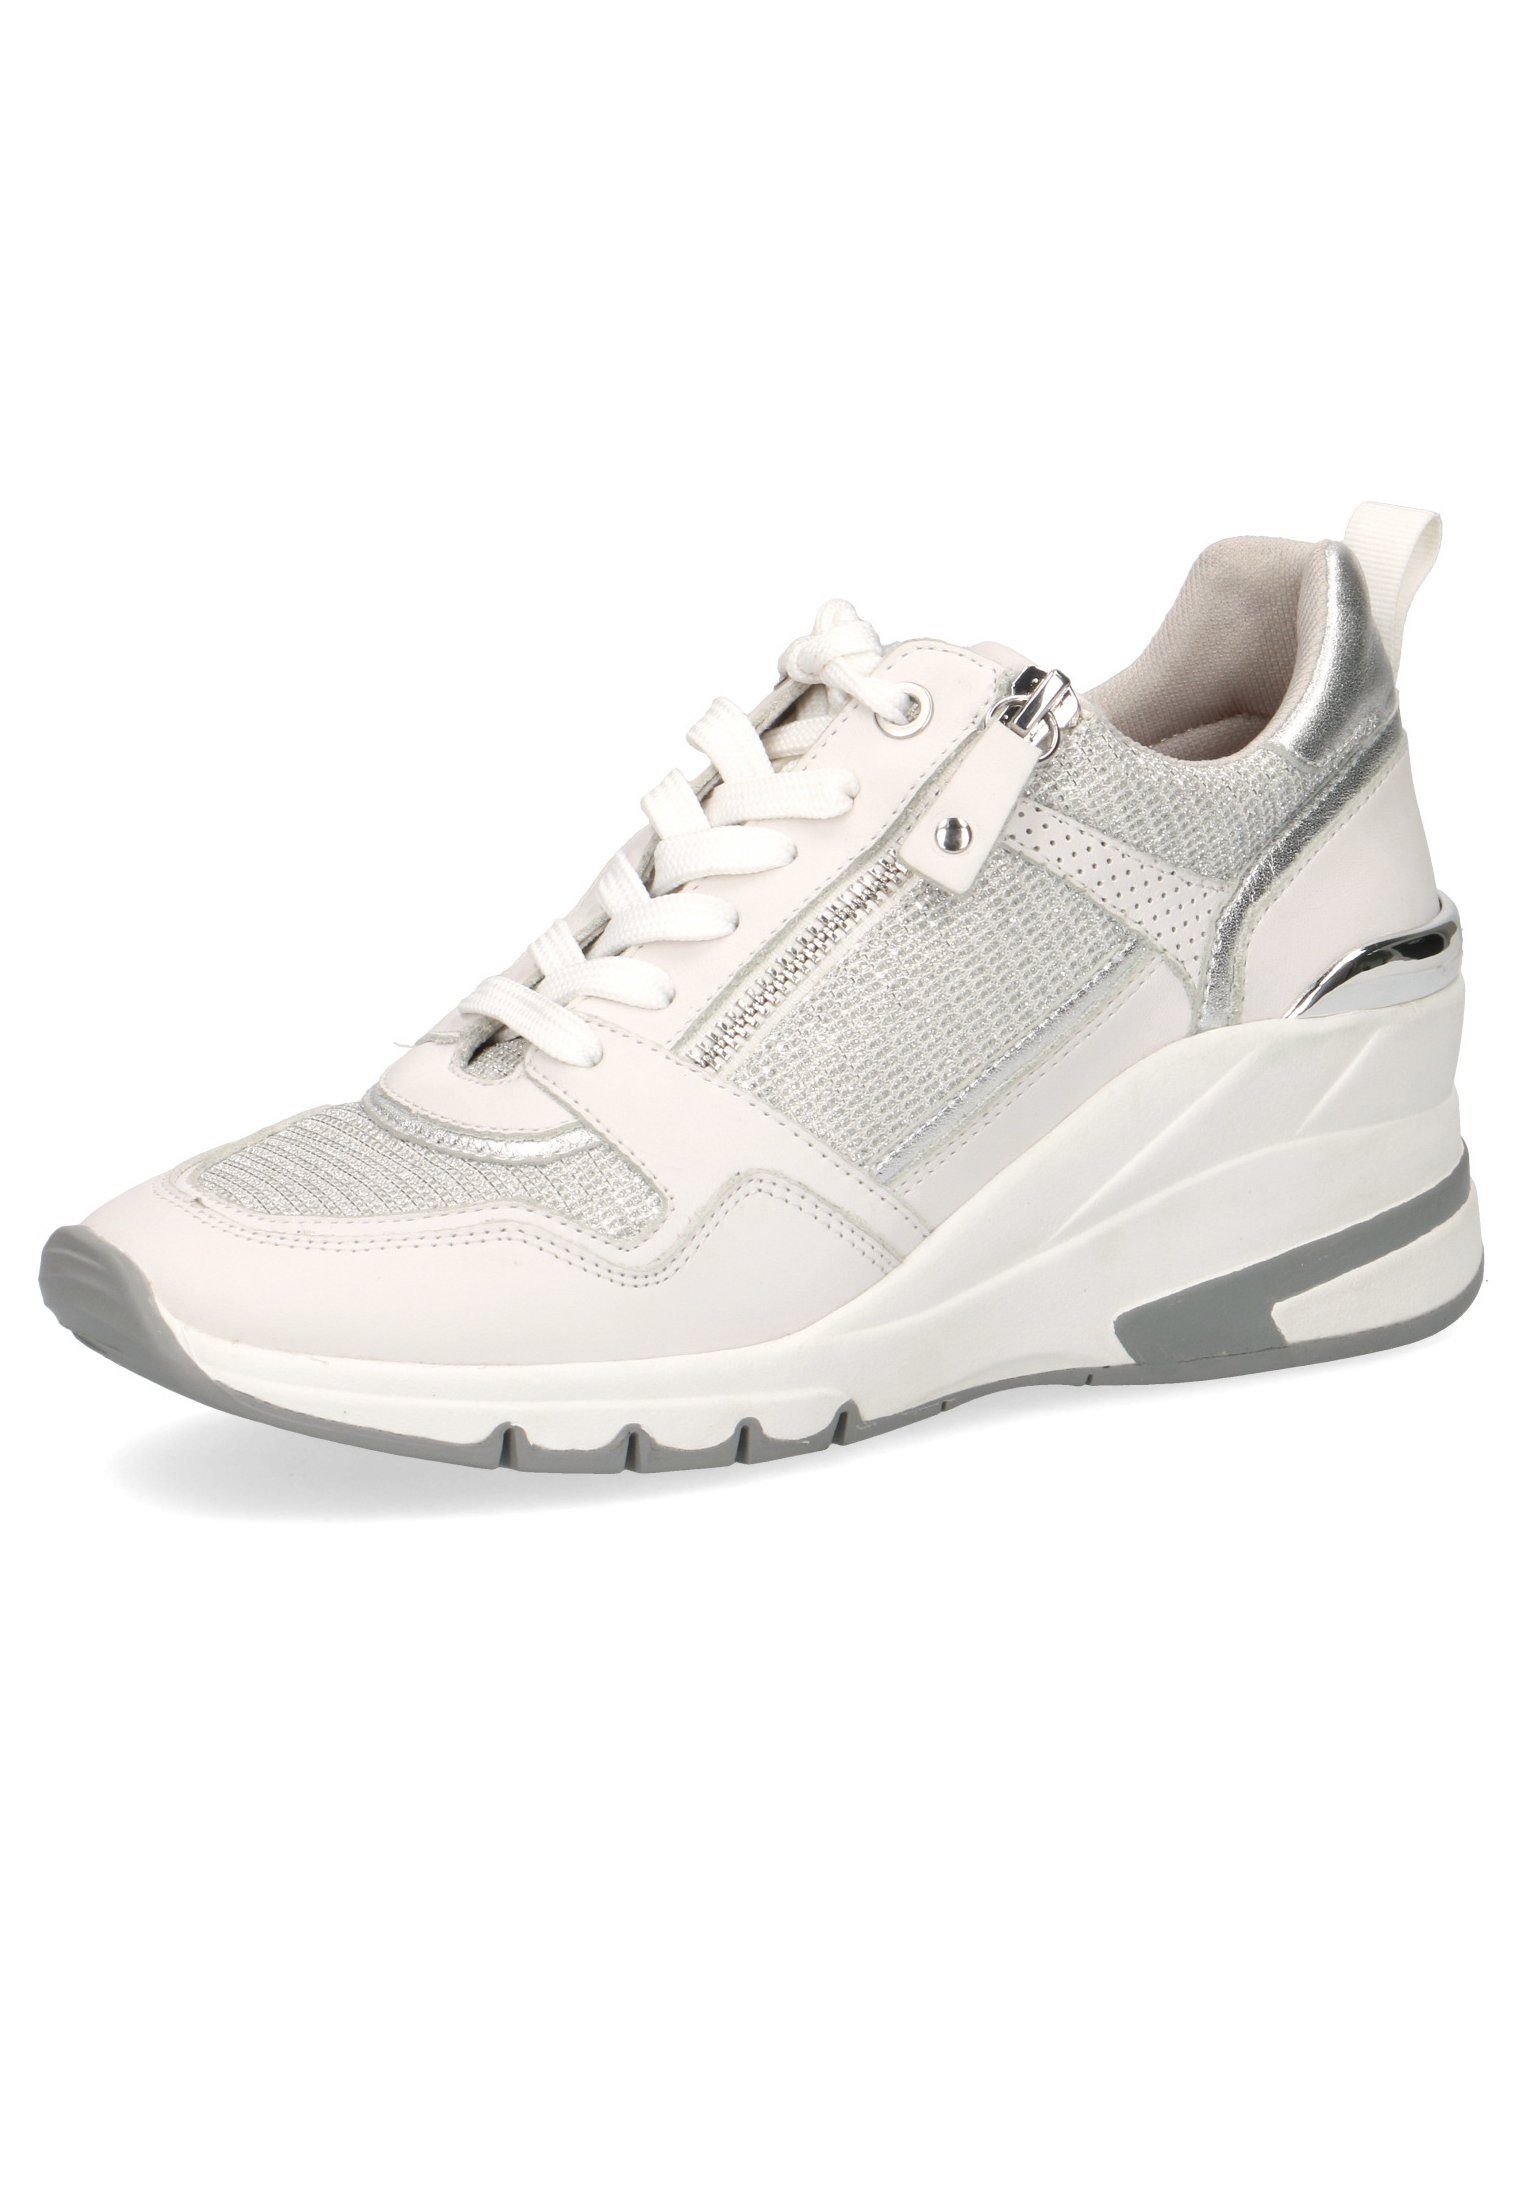 197 Caprice 9-23710-26 Sneaker White Comb